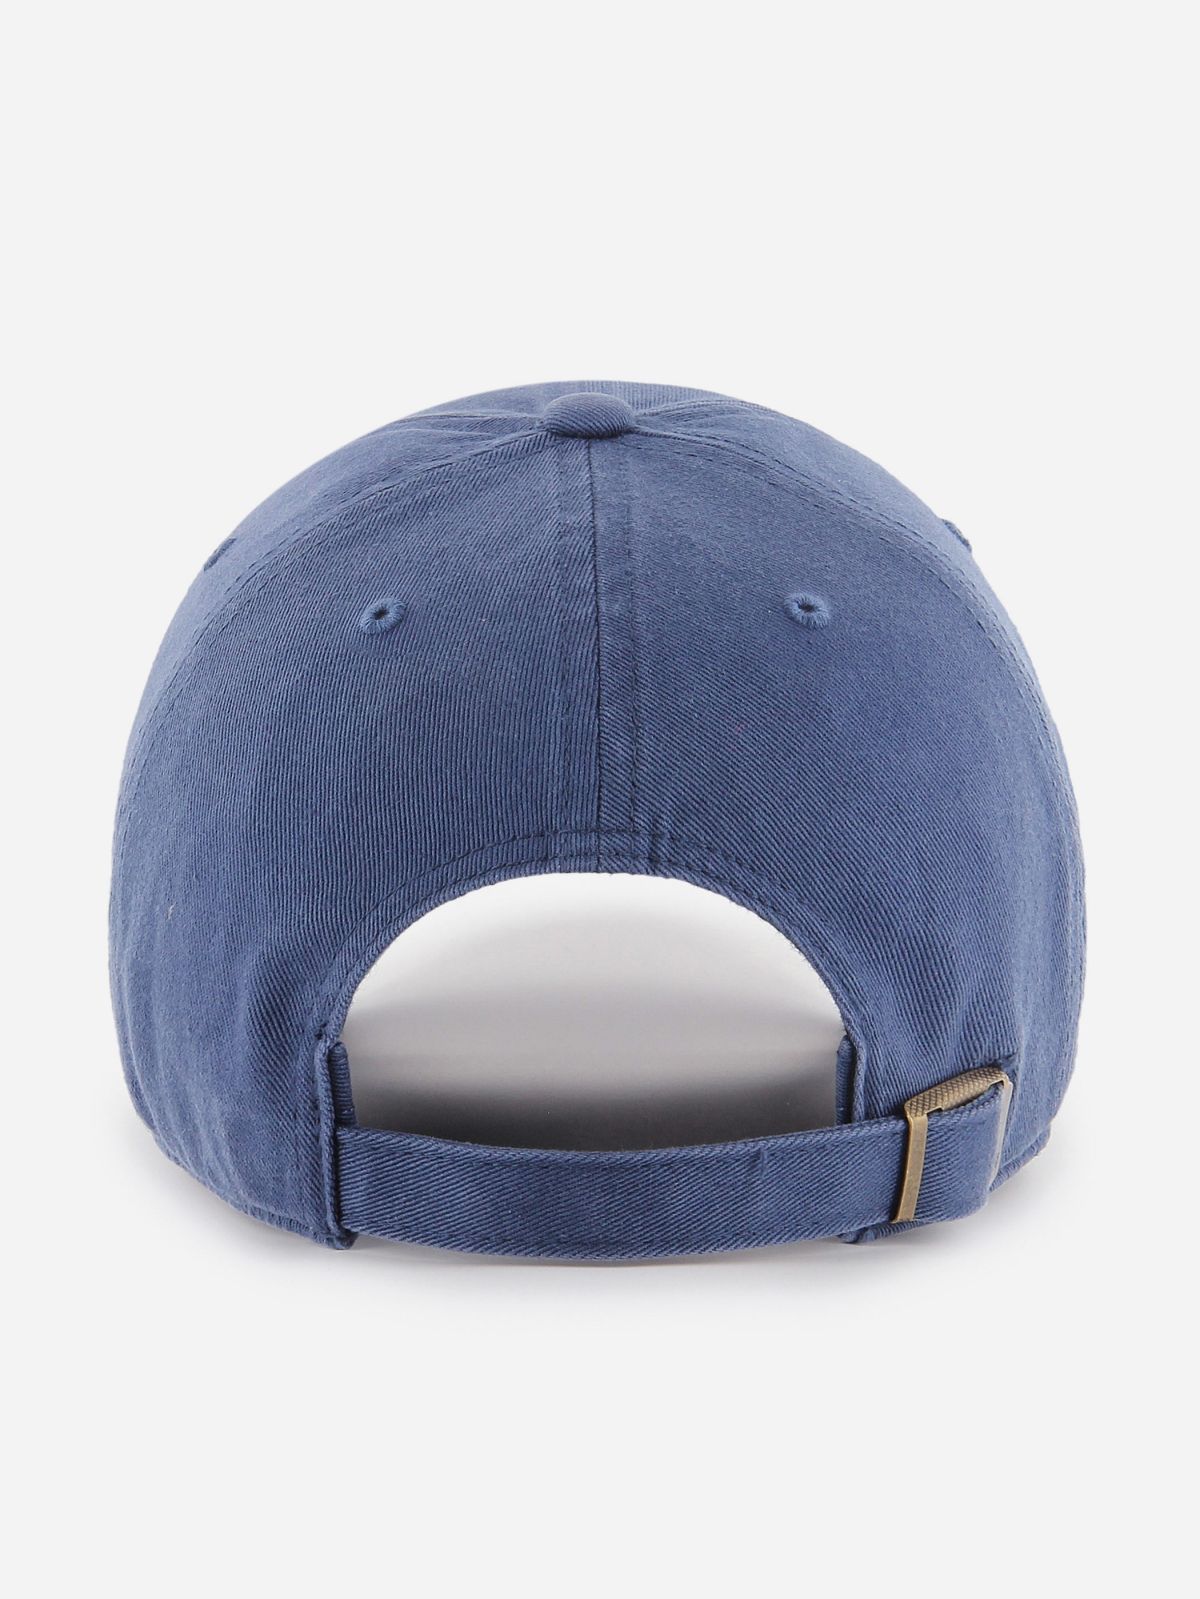  כובע מצחייה עם לוגו רקום / גברים של BRAND 47